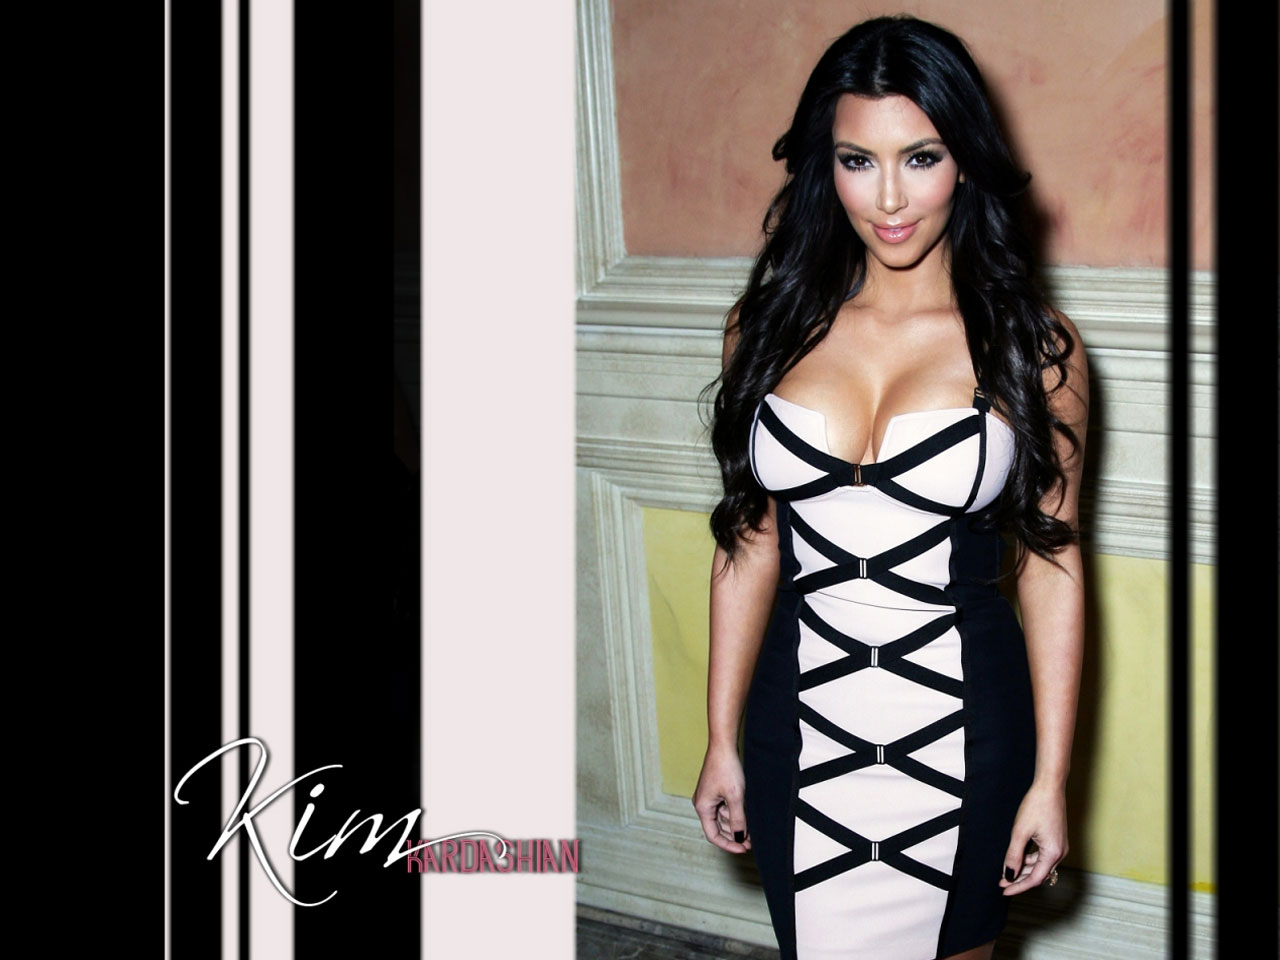 Kim Kardashian 2010 Fashion - HD Wallpaper 